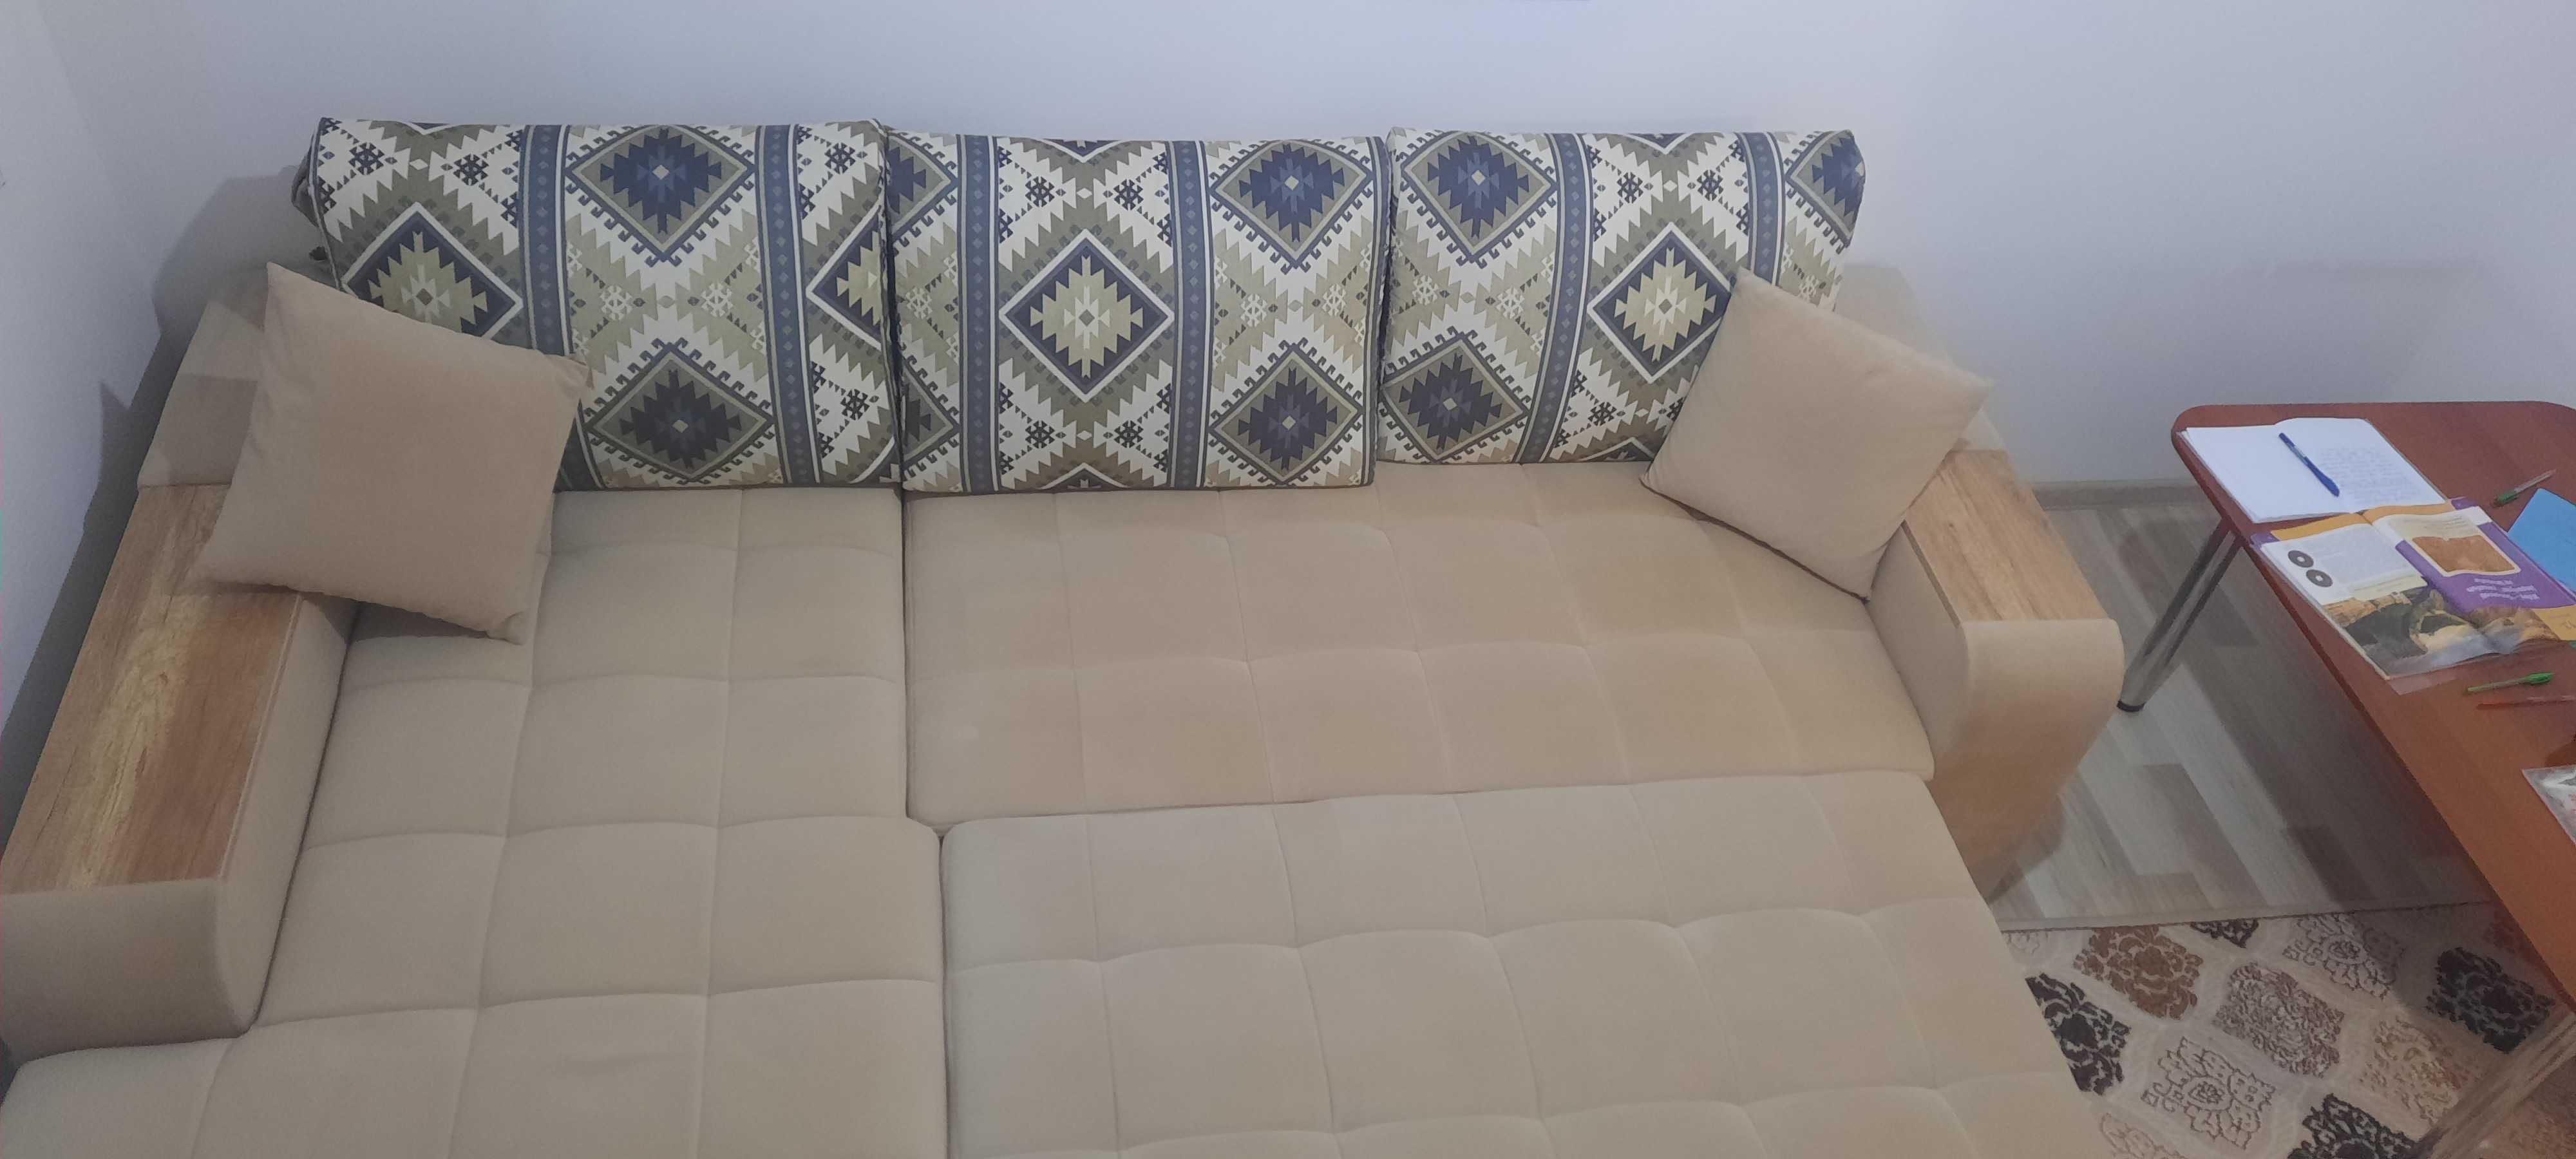 Продаётся диван. Турецкого производства. 2,5 × 1,7